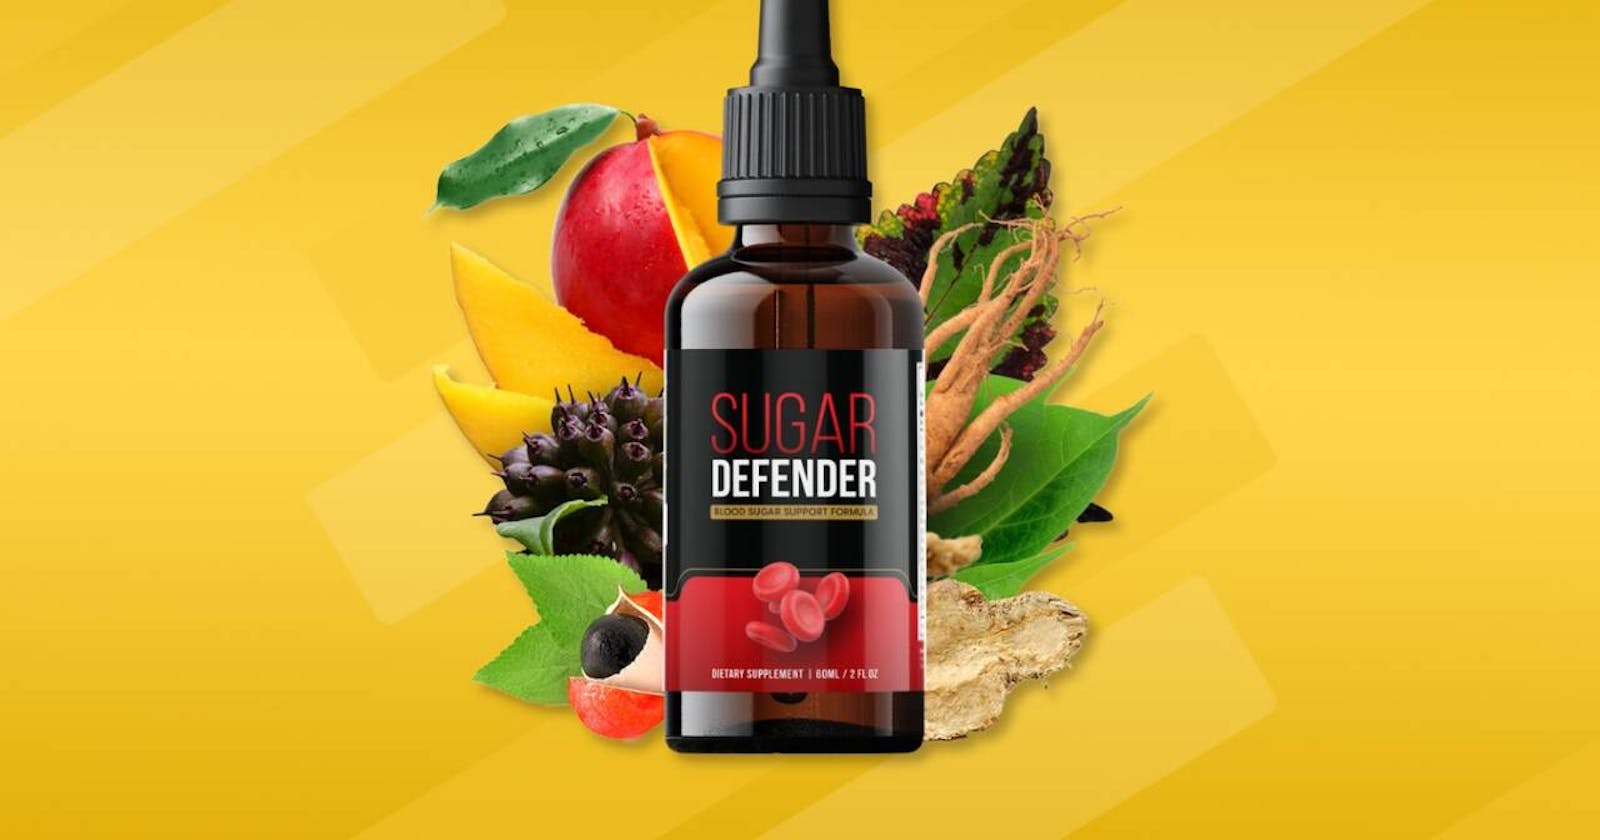 Sugar Defender Amazon Reviews